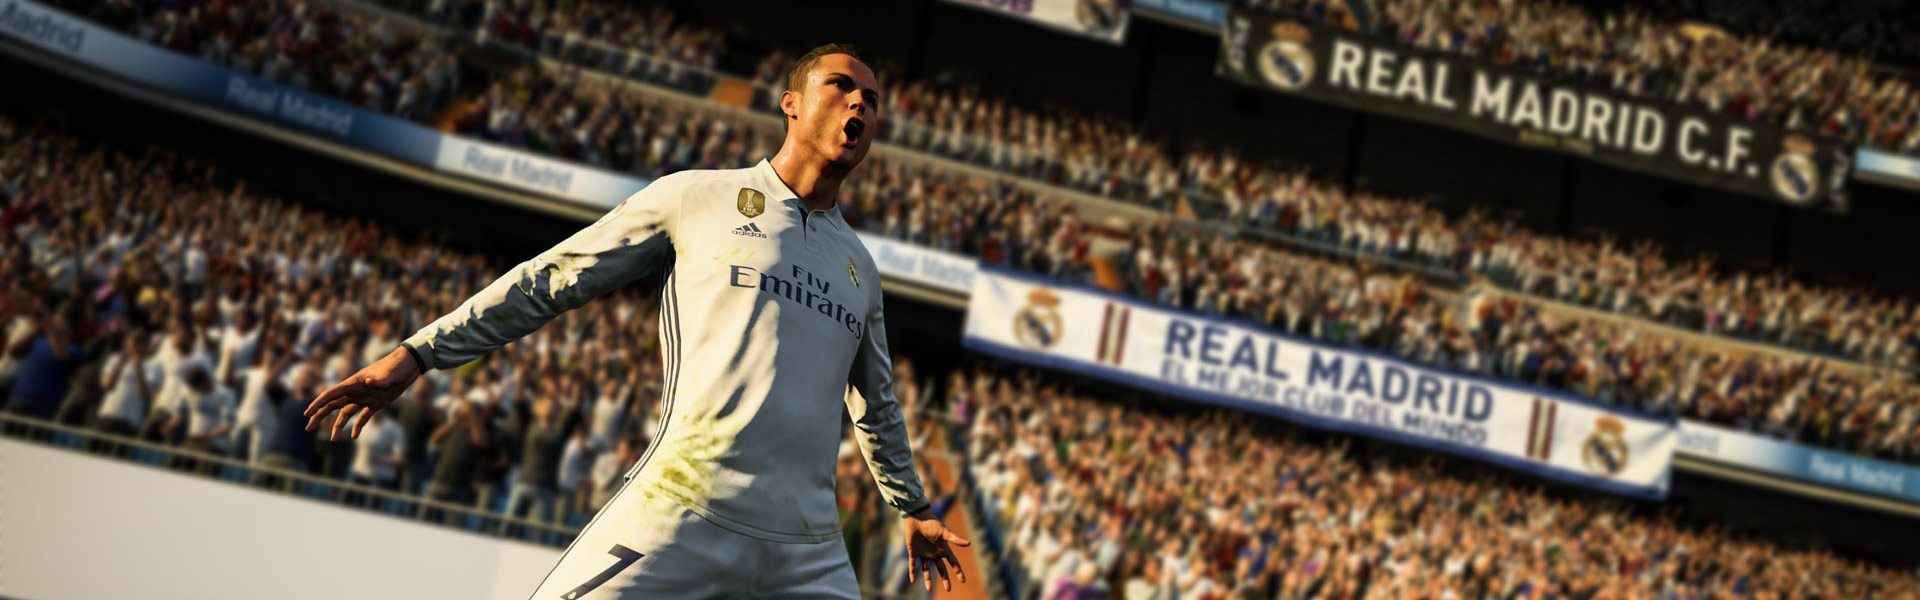 Fifa 18 Mit Cristiano Ronaldo Angekundigt Der Deutschsprachige Playstation Blog